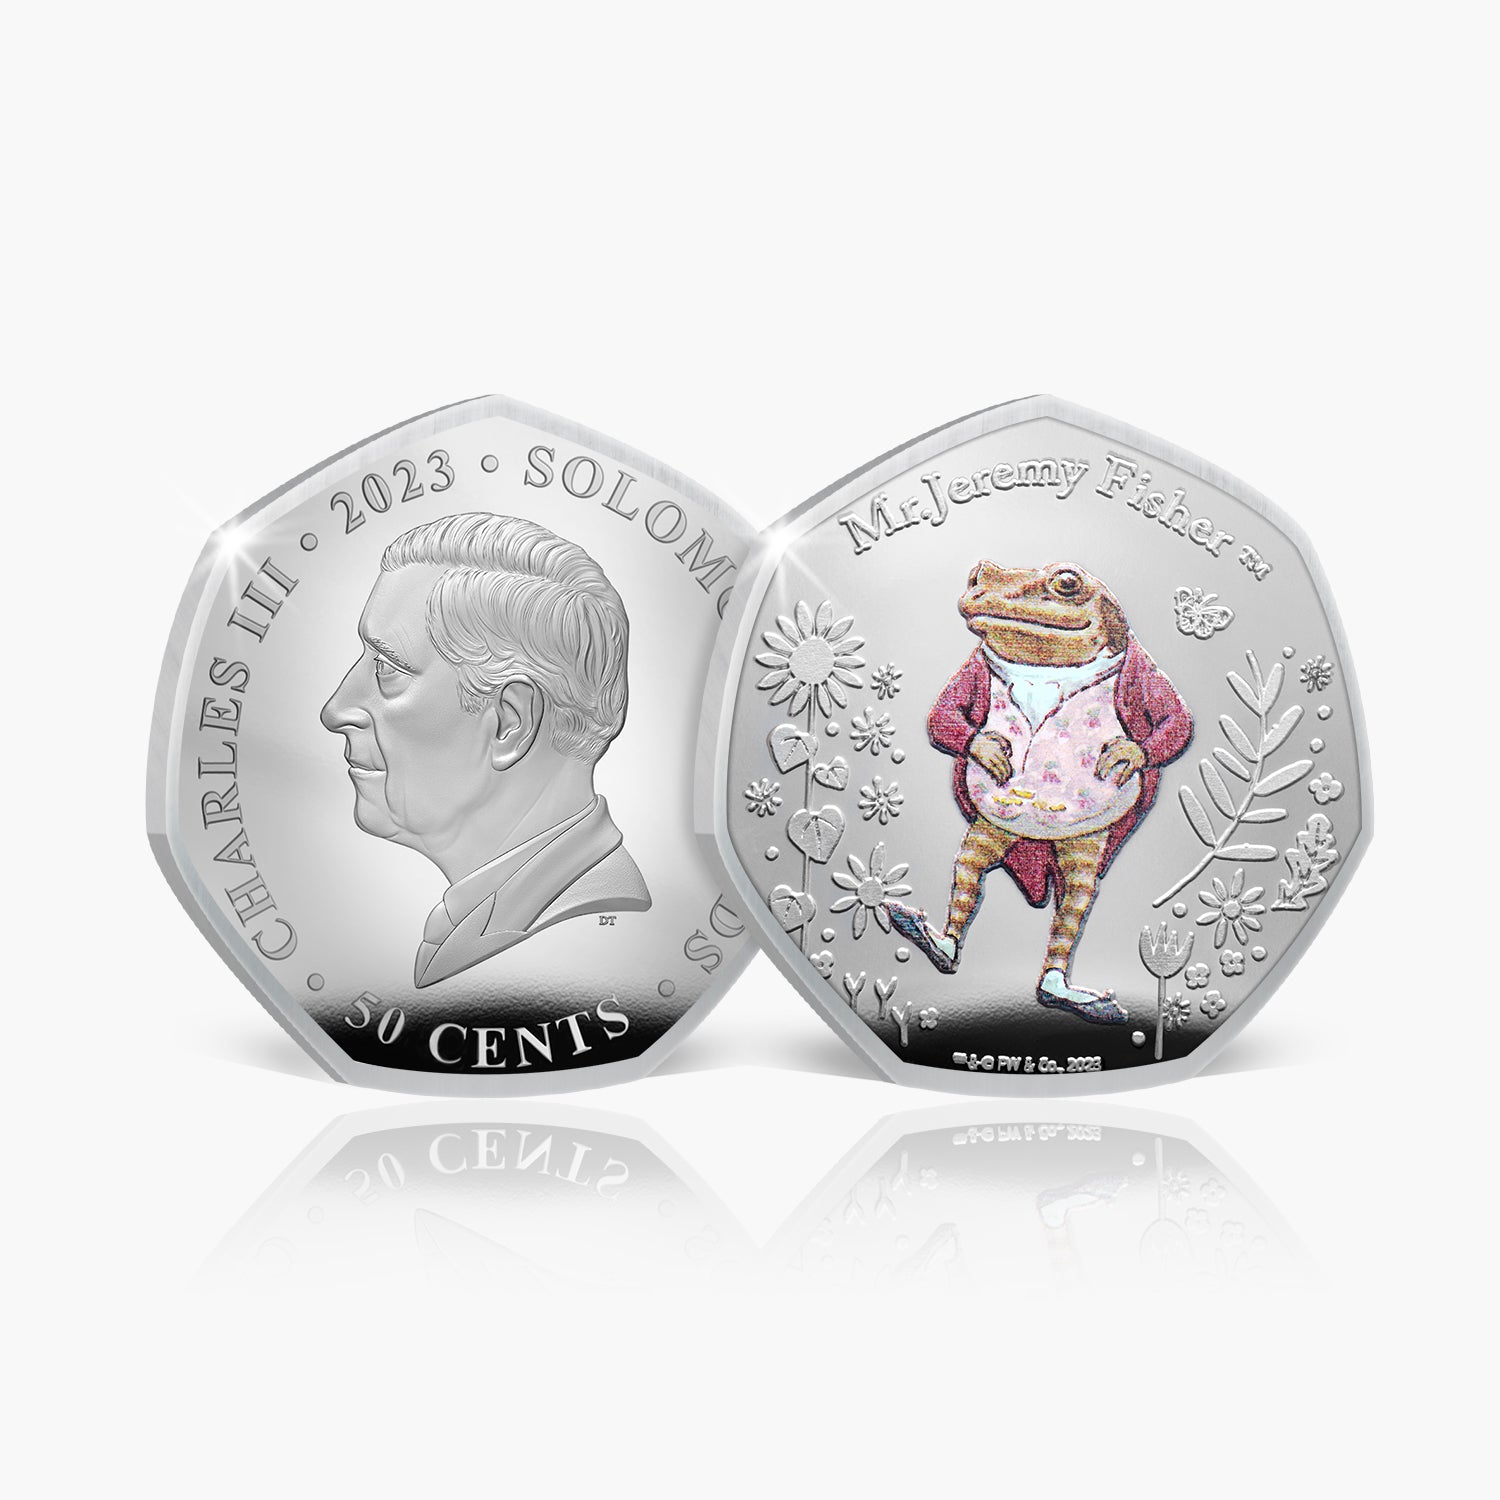 ピーターラビットの世界 2023 コインコレクション - ジェレミー・フィッシャー氏コイン